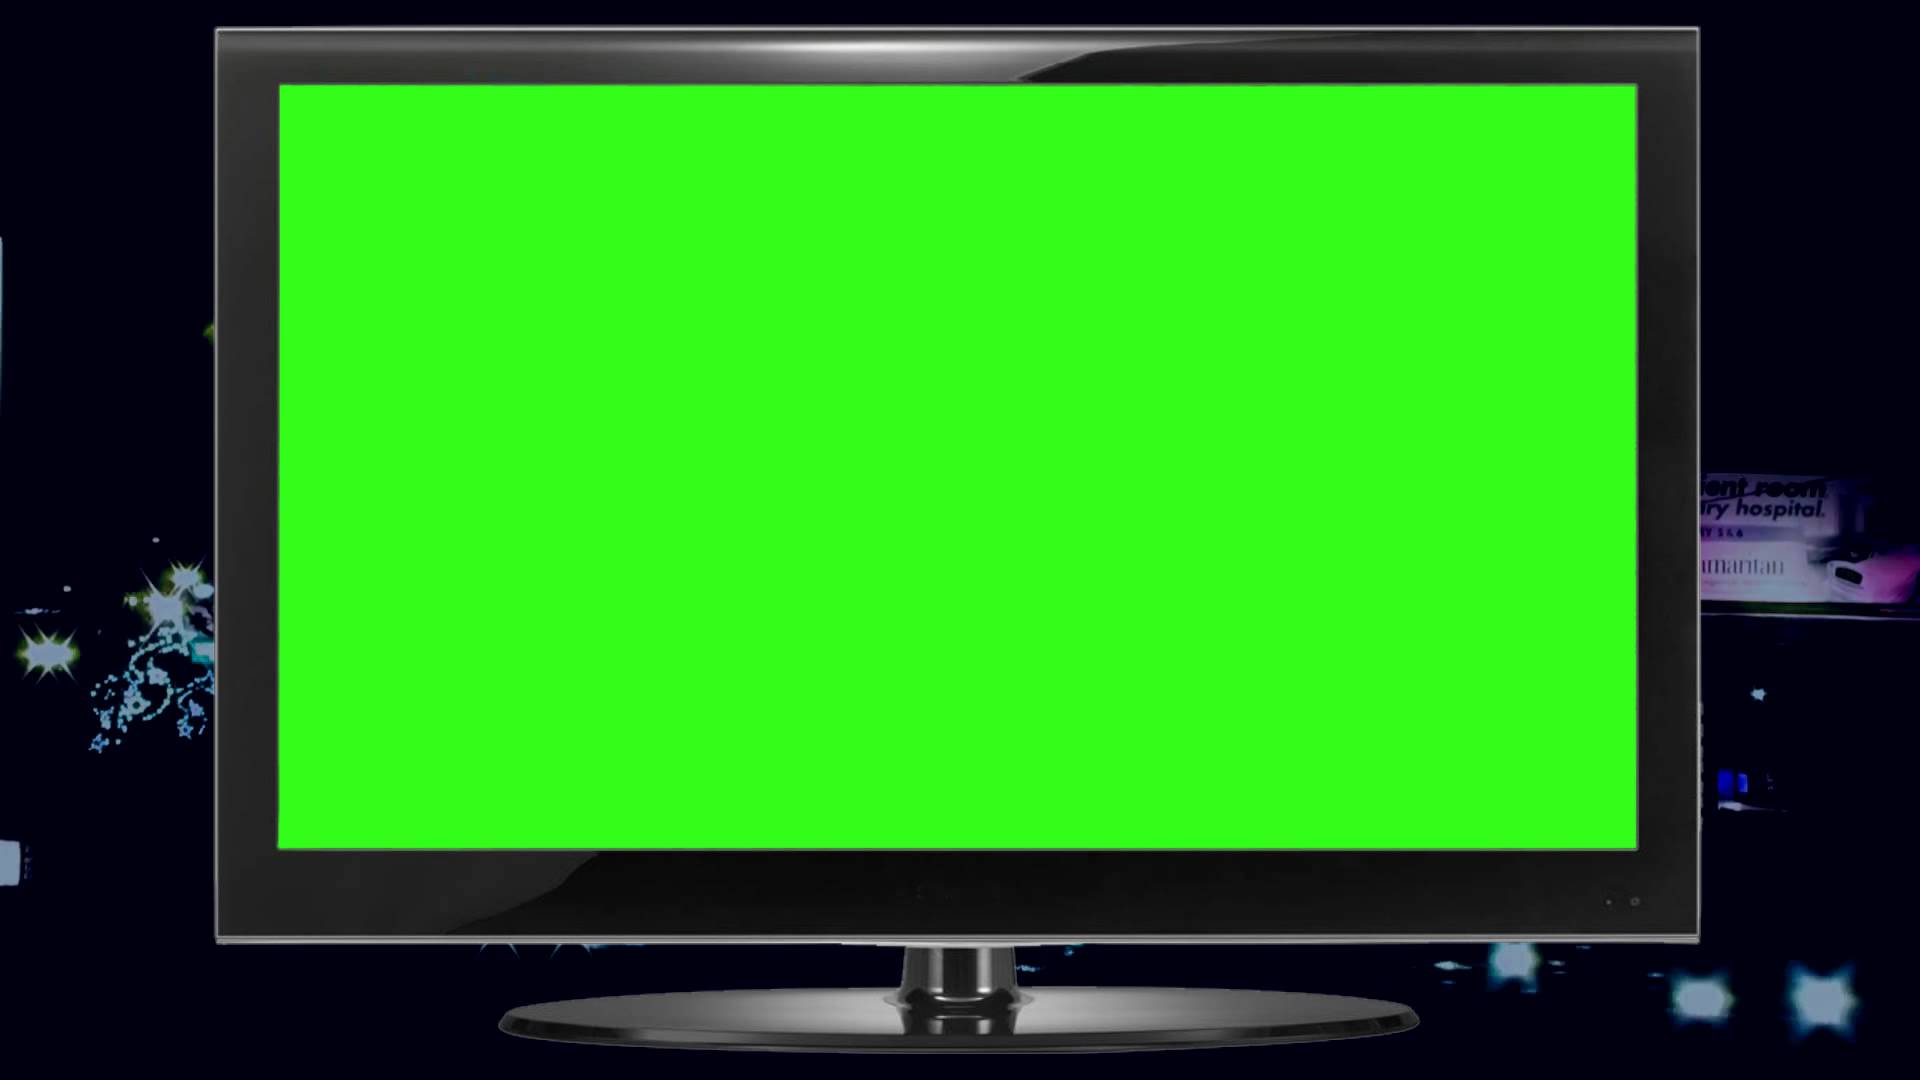 Green Screen là công cụ không thể thiếu trong quá trình làm phim. Tuy nhiên, đó không chỉ là sự lựa chọn cho những nhà làm phim chuyên nghiệp mà còn được sử dụng rộng rãi trong các video game và các video hài. Hãy cùng xem những video sử dụng Green Screen khiến bạn ngỡ ngàng.